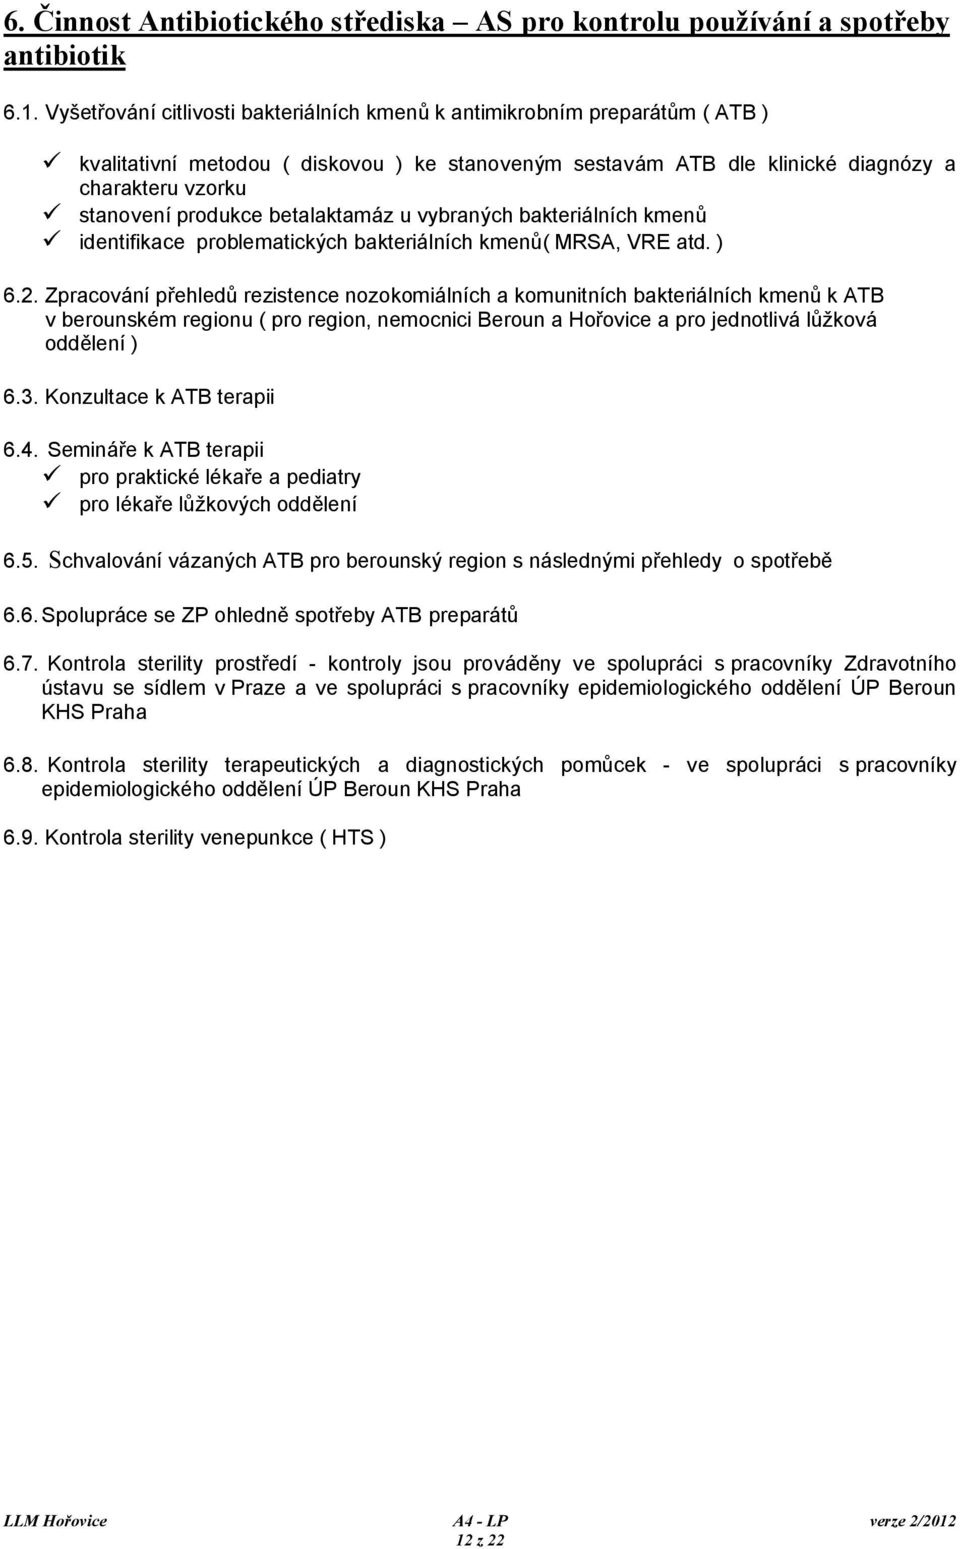 betalaktamáz u vybraných bakteriálních kmenů identifikace problematických bakteriálních kmenů( MRSA, VRE atd. ) 6.2.